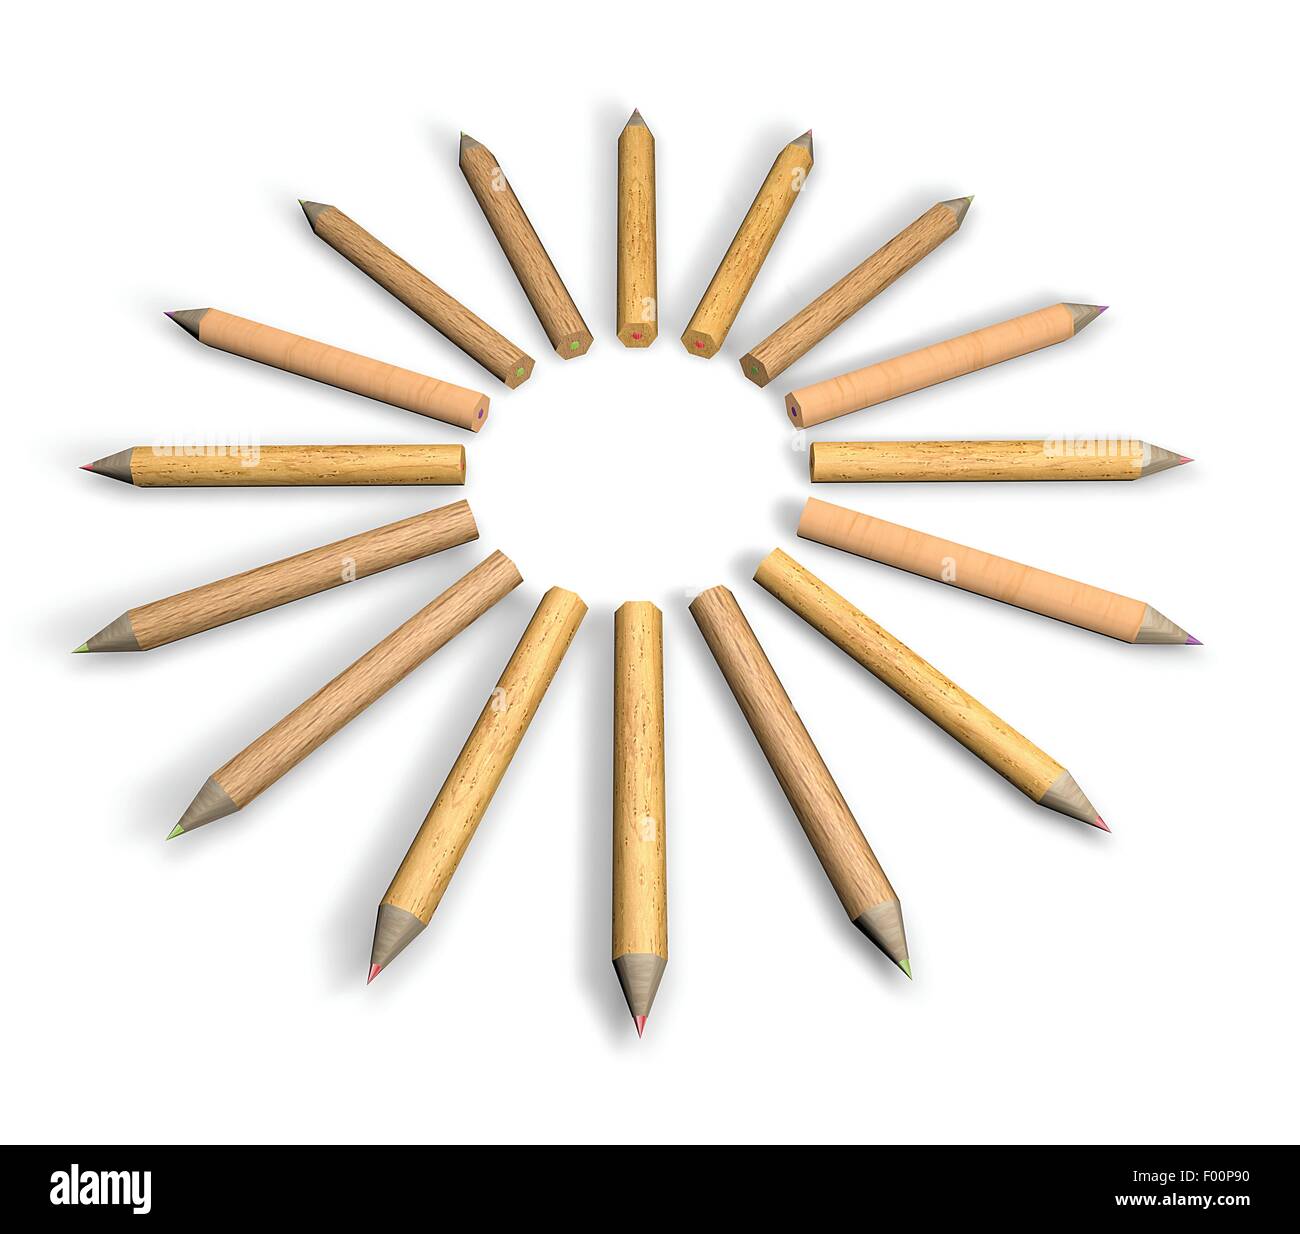 Circle-shaped pencils on white background Stock Photo